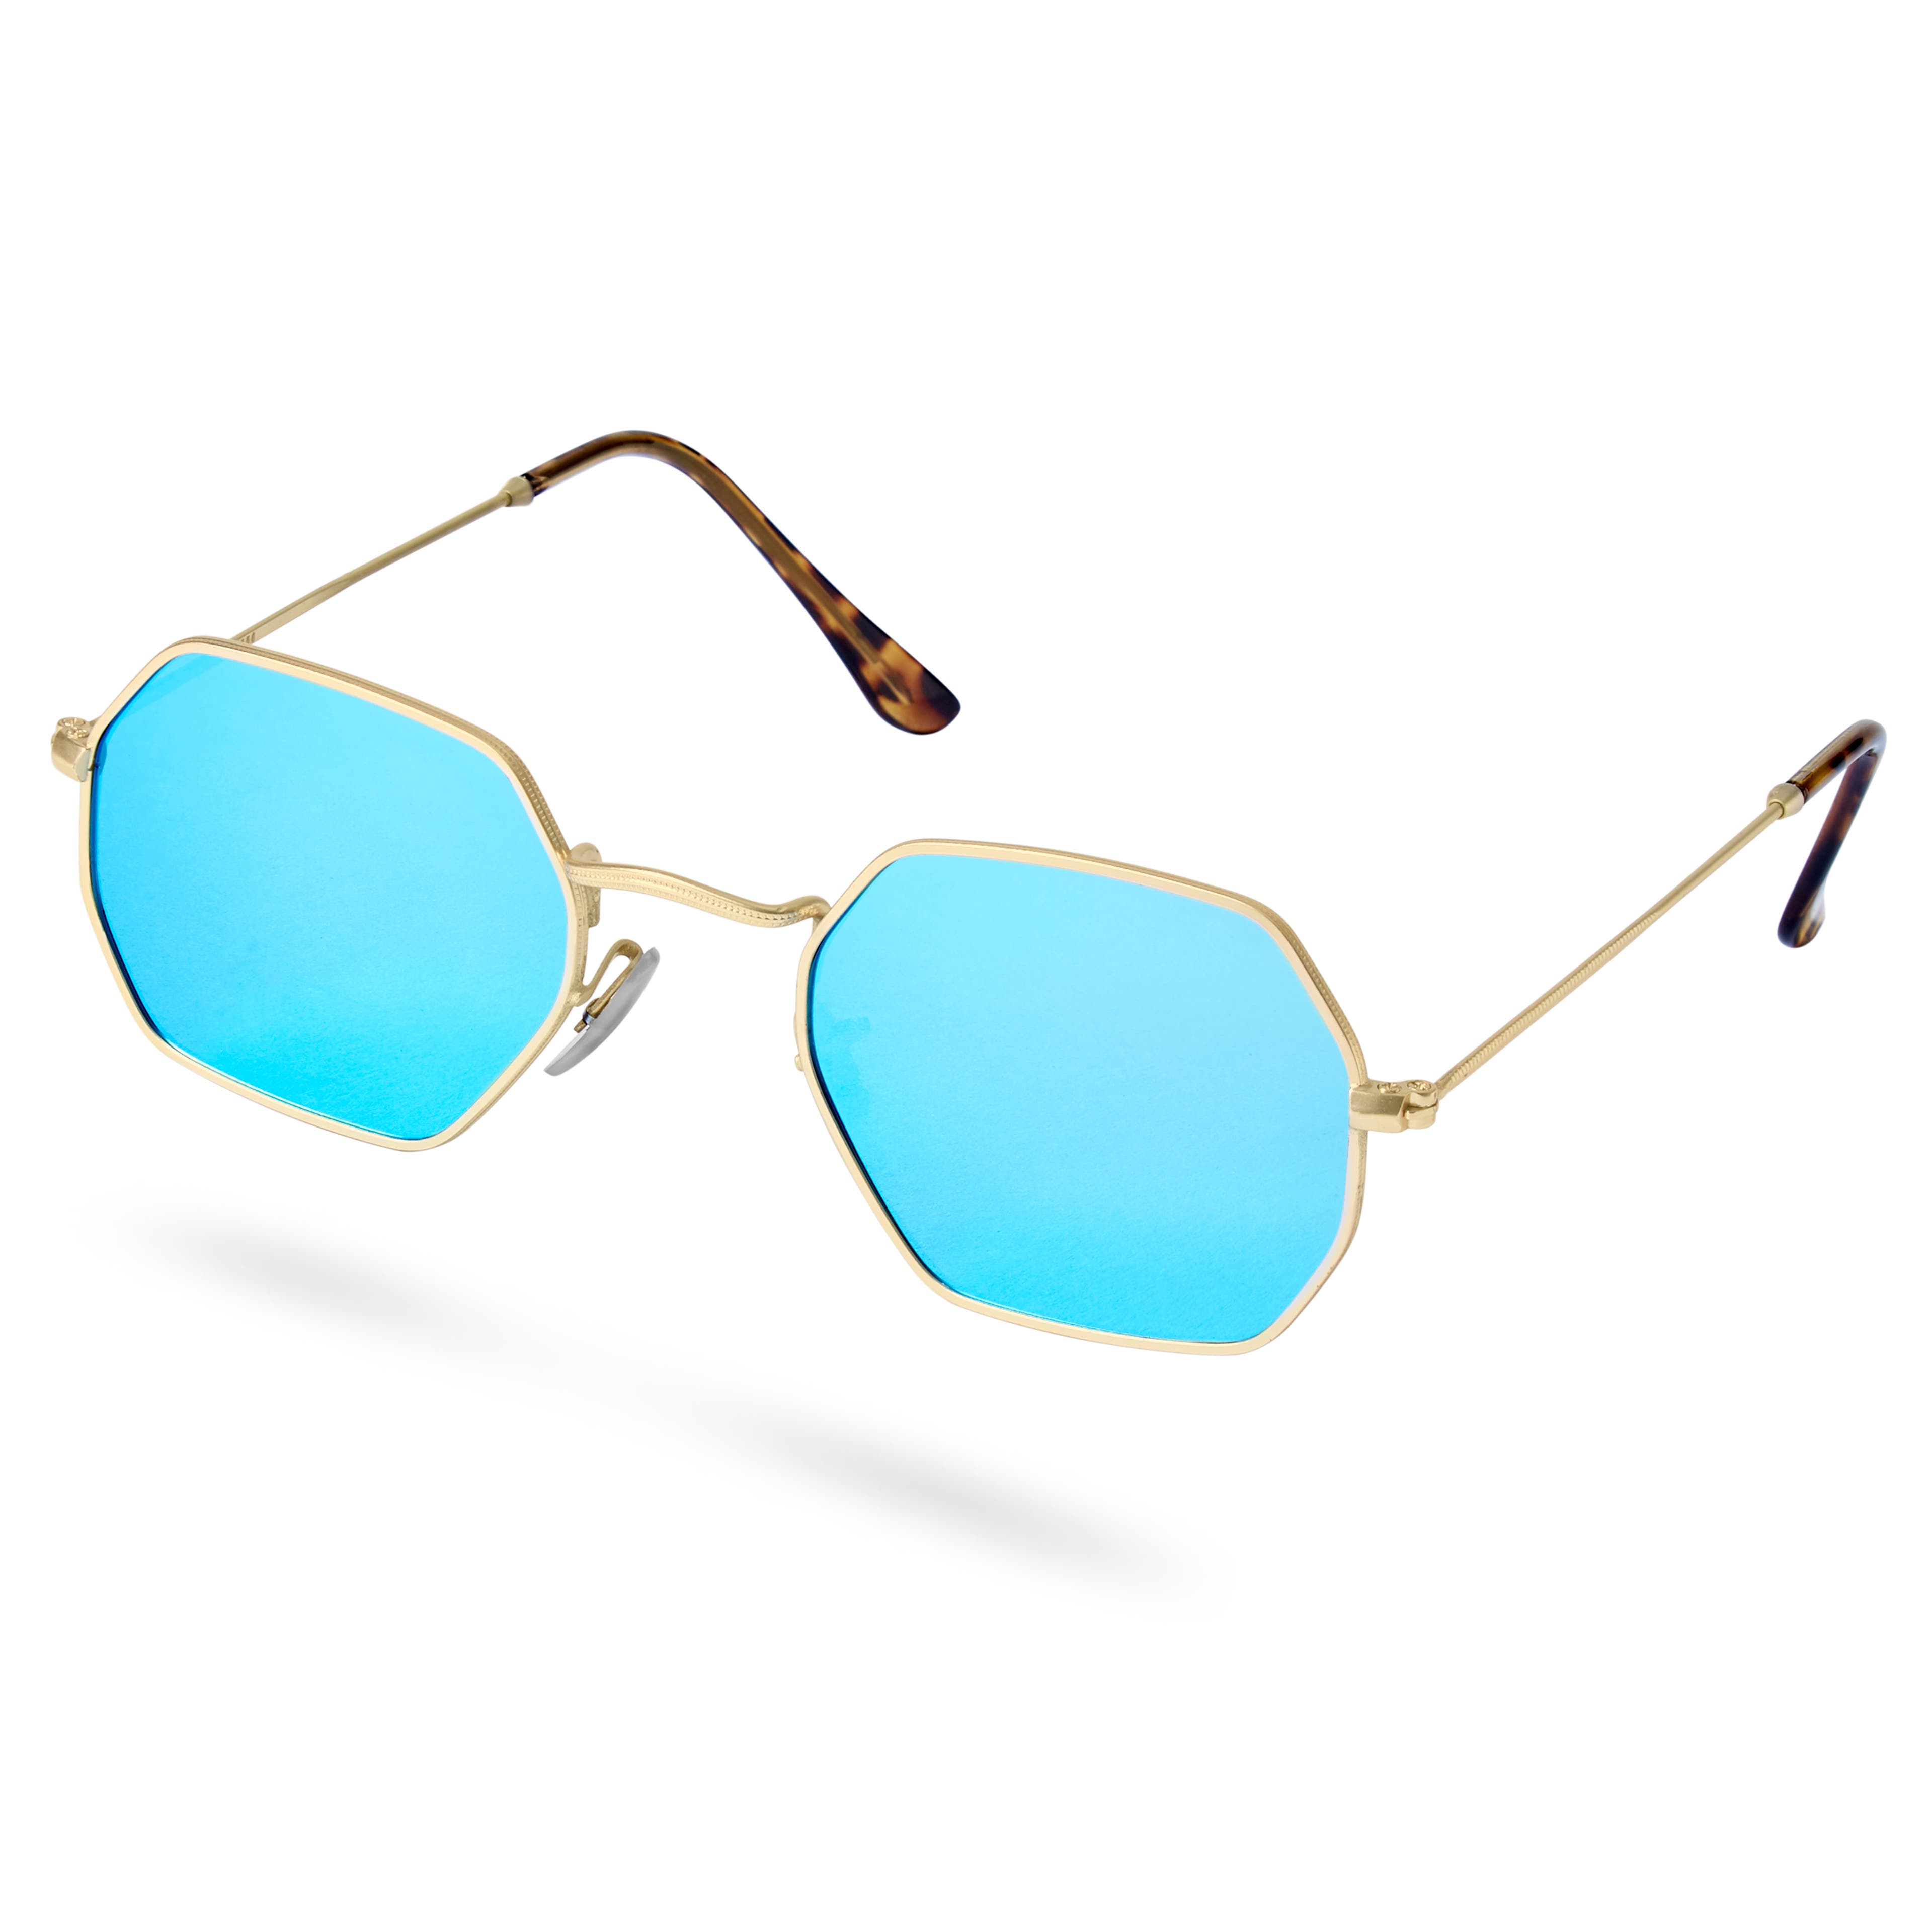 Modne okulary przeciwsłoneczne w złoto-niebieskim tonie